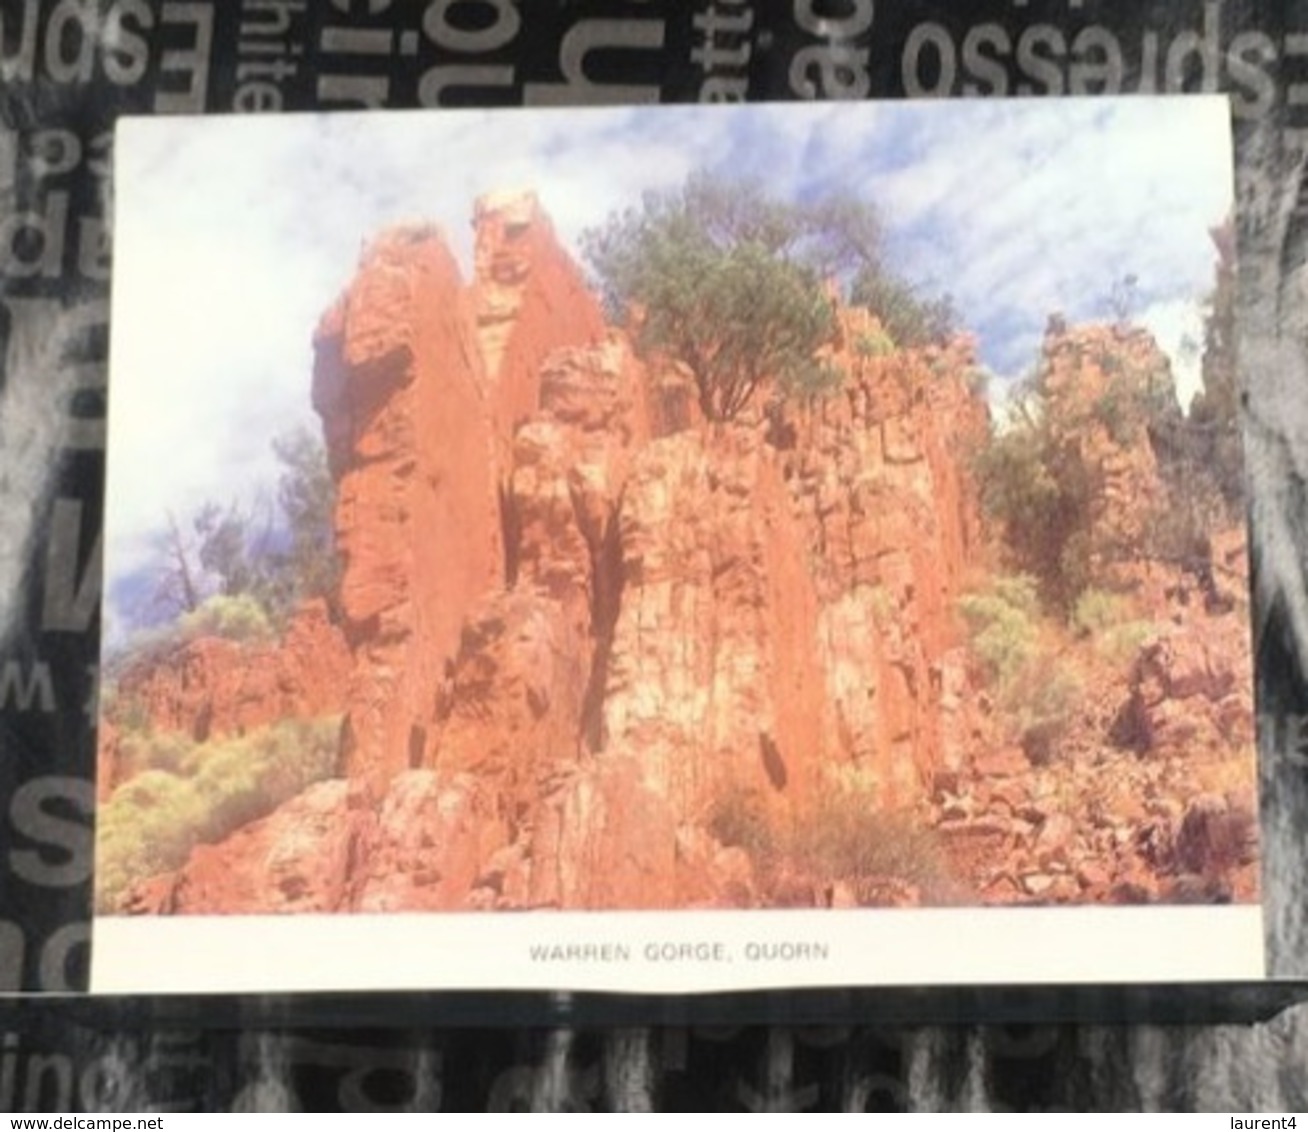 (Booklet 95) Australia - SA - Flinders Ranges - Flinders Ranges